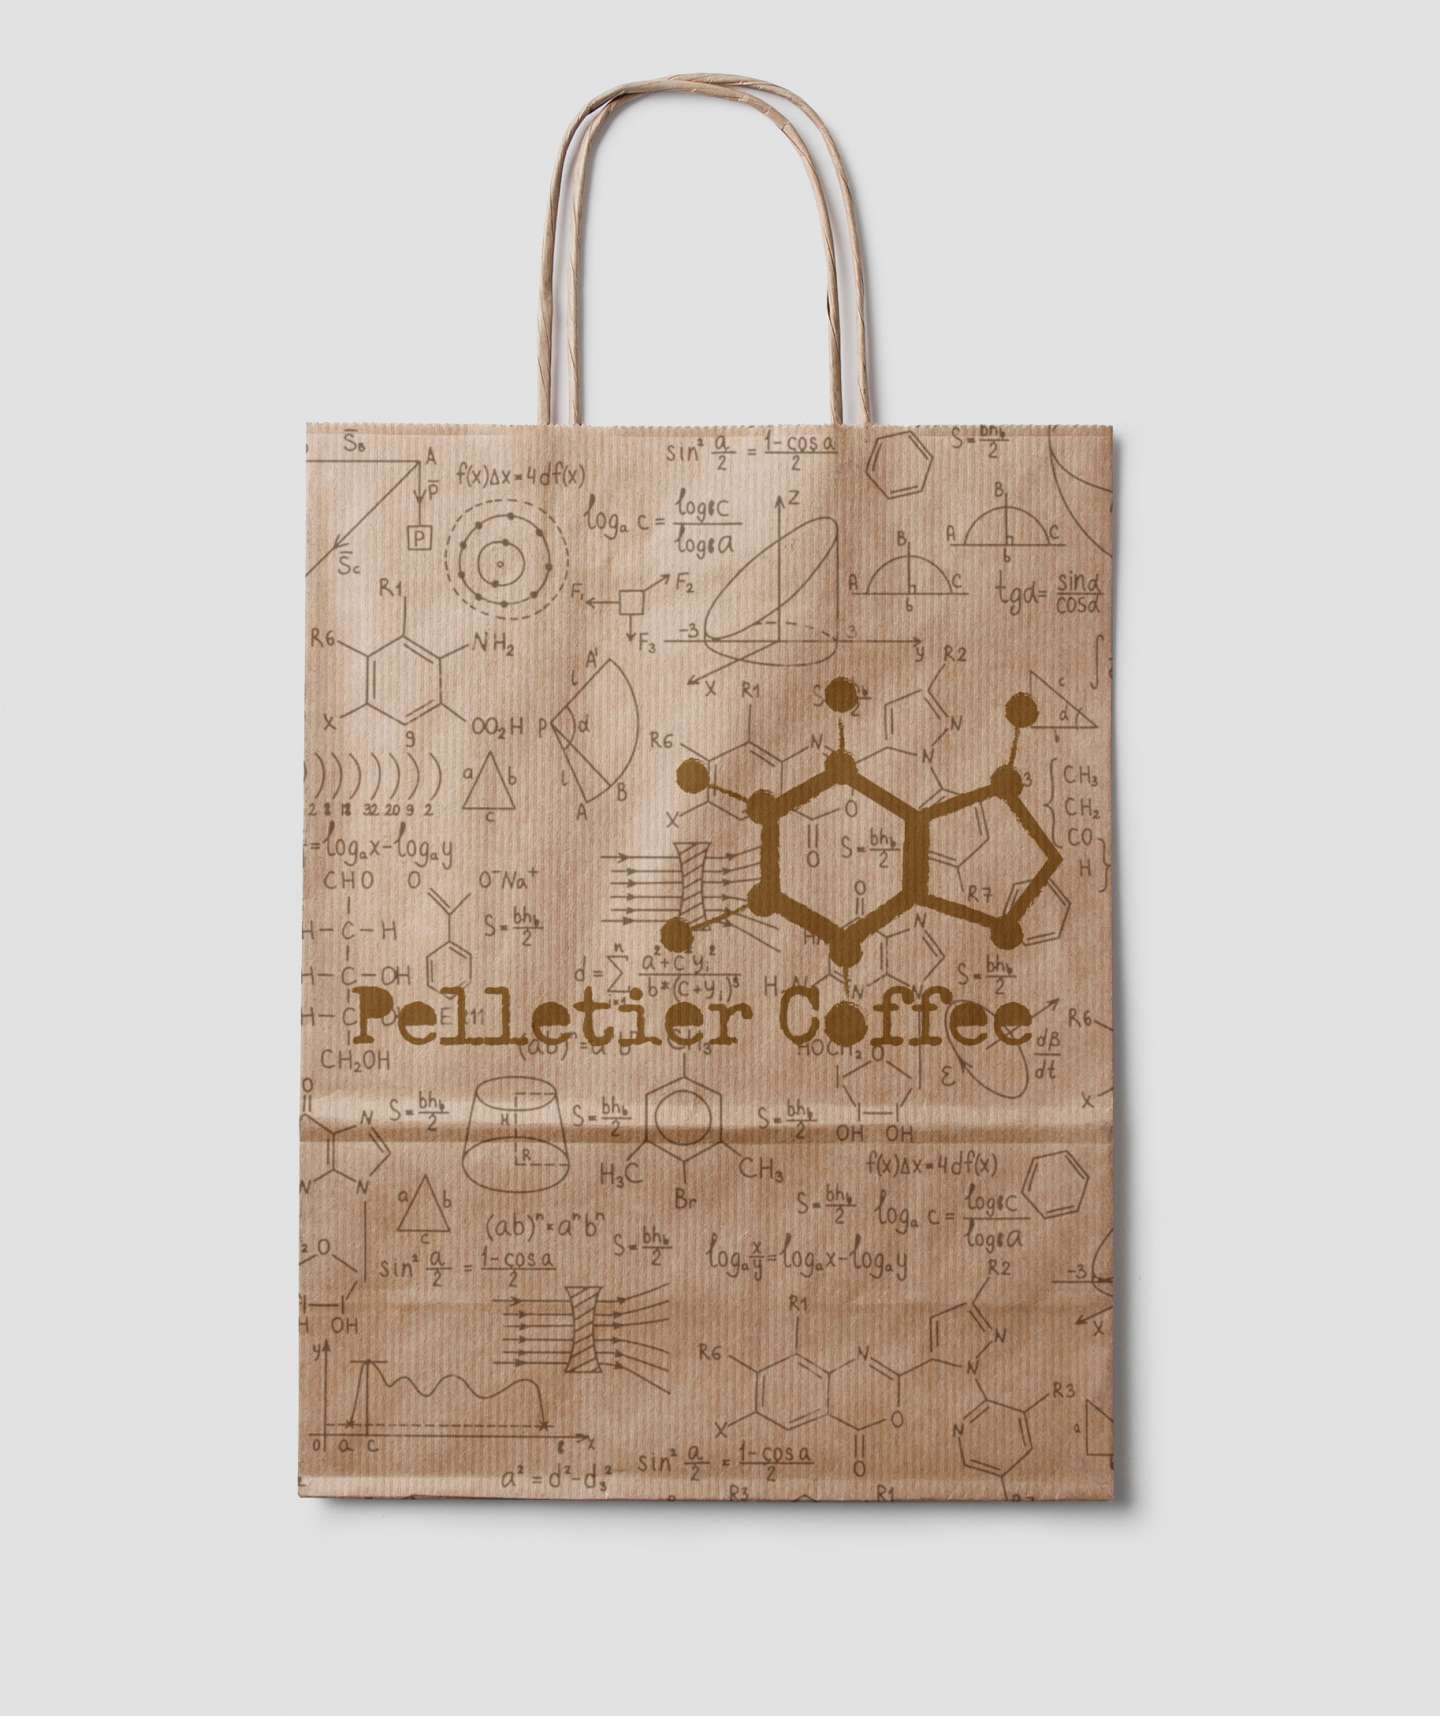 Pelletier Coffee